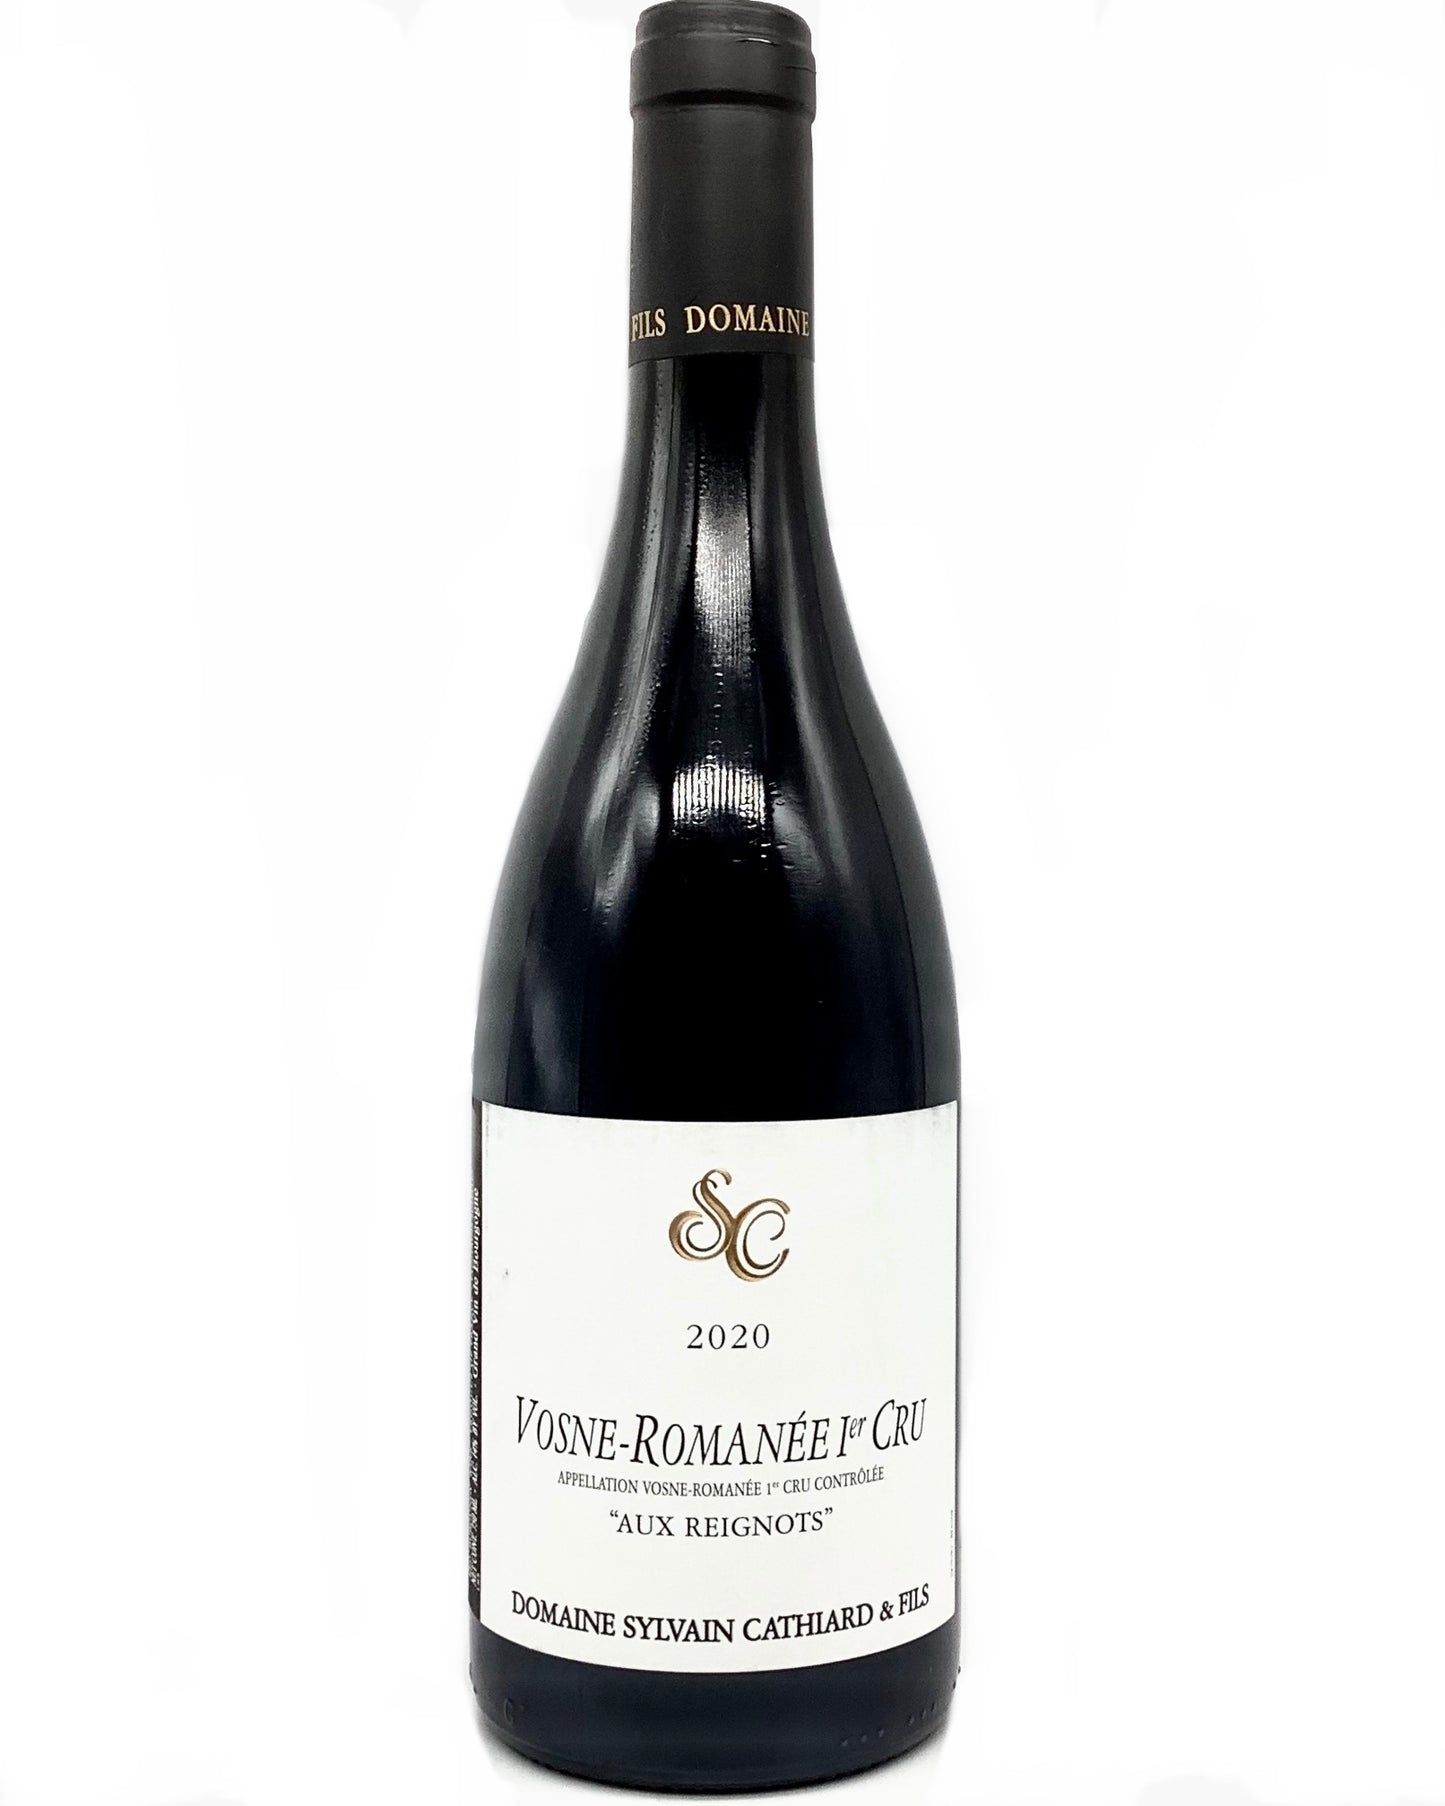 Domaine Sylvain Cathiard, Pinot Noir, Vosne-Romanée 1er Cru Aux Reignots, Côte de Nuits, Burgundy, France 2020